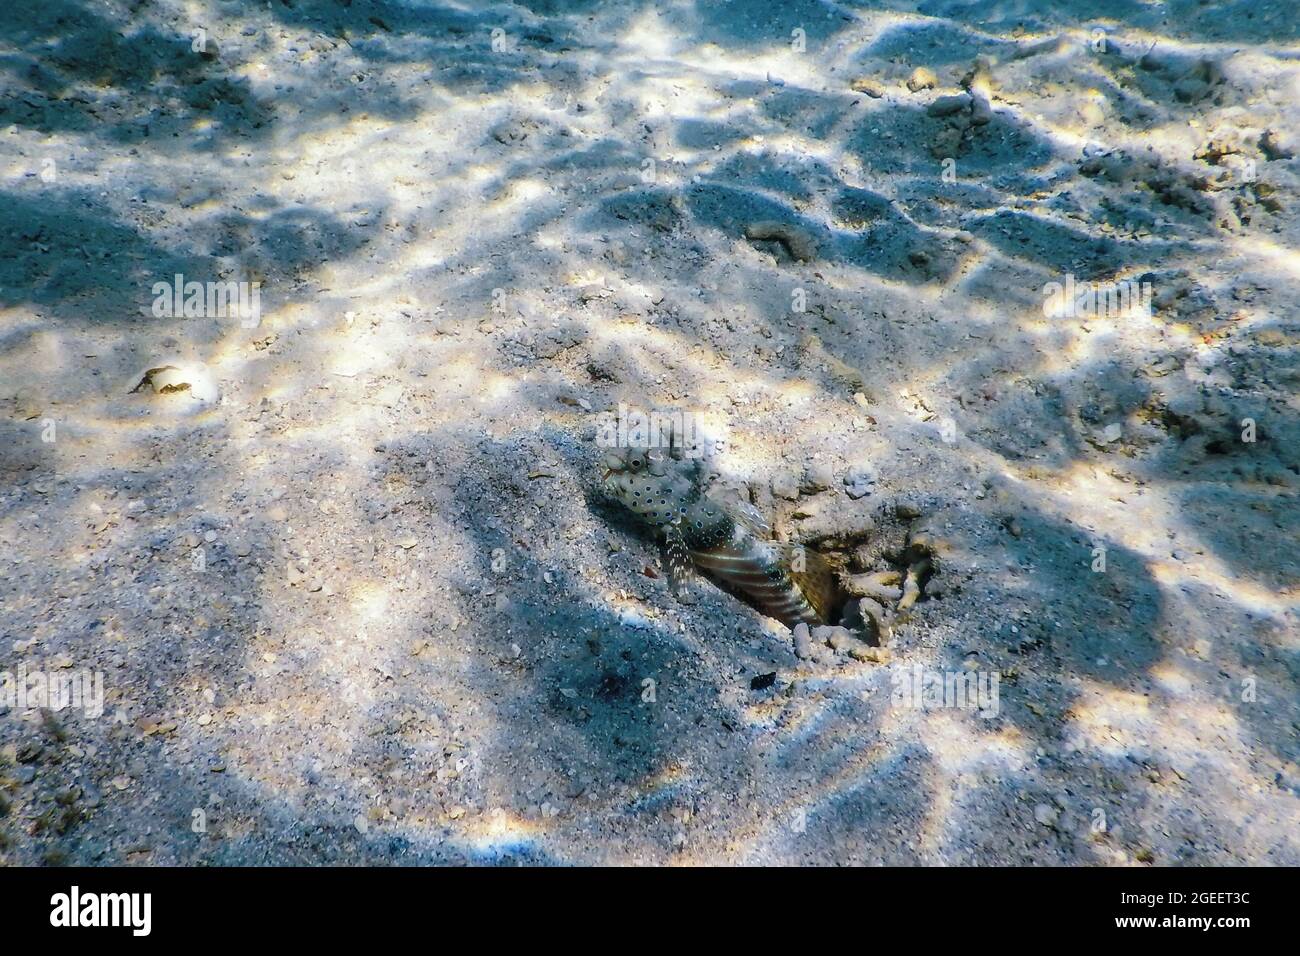 Spotted prawn goby (Amblyeleotris guttata) underwater, Marine life Stock Photo